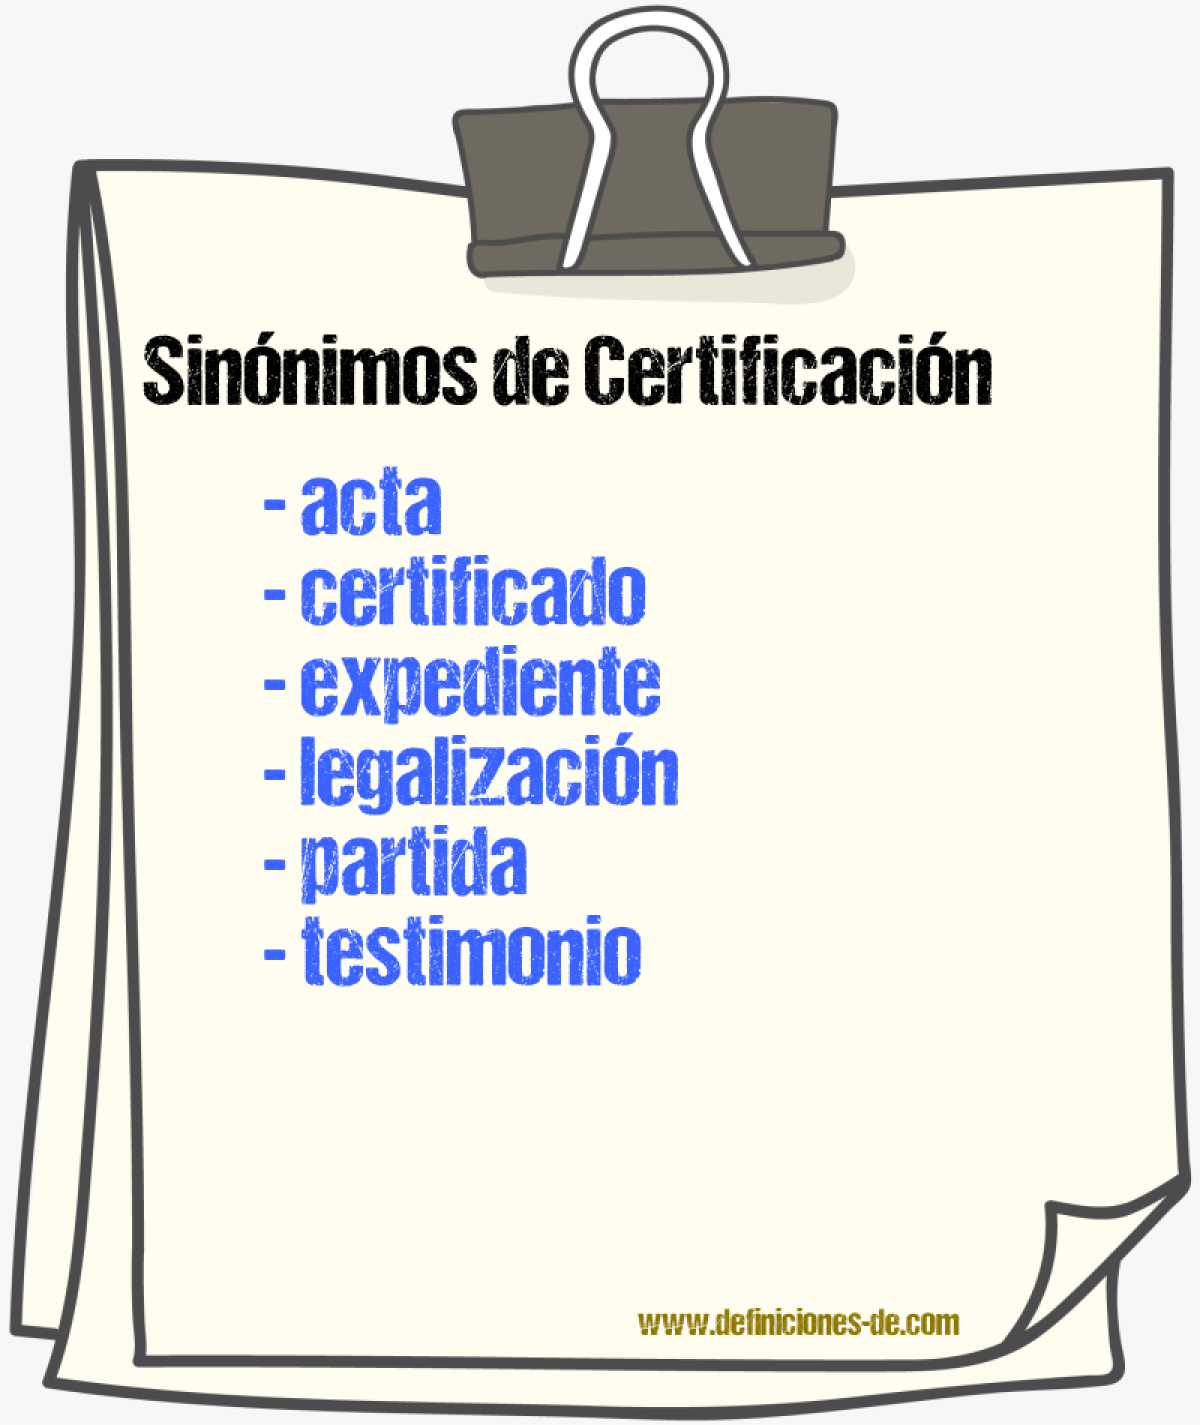 Sinónimos de certificación